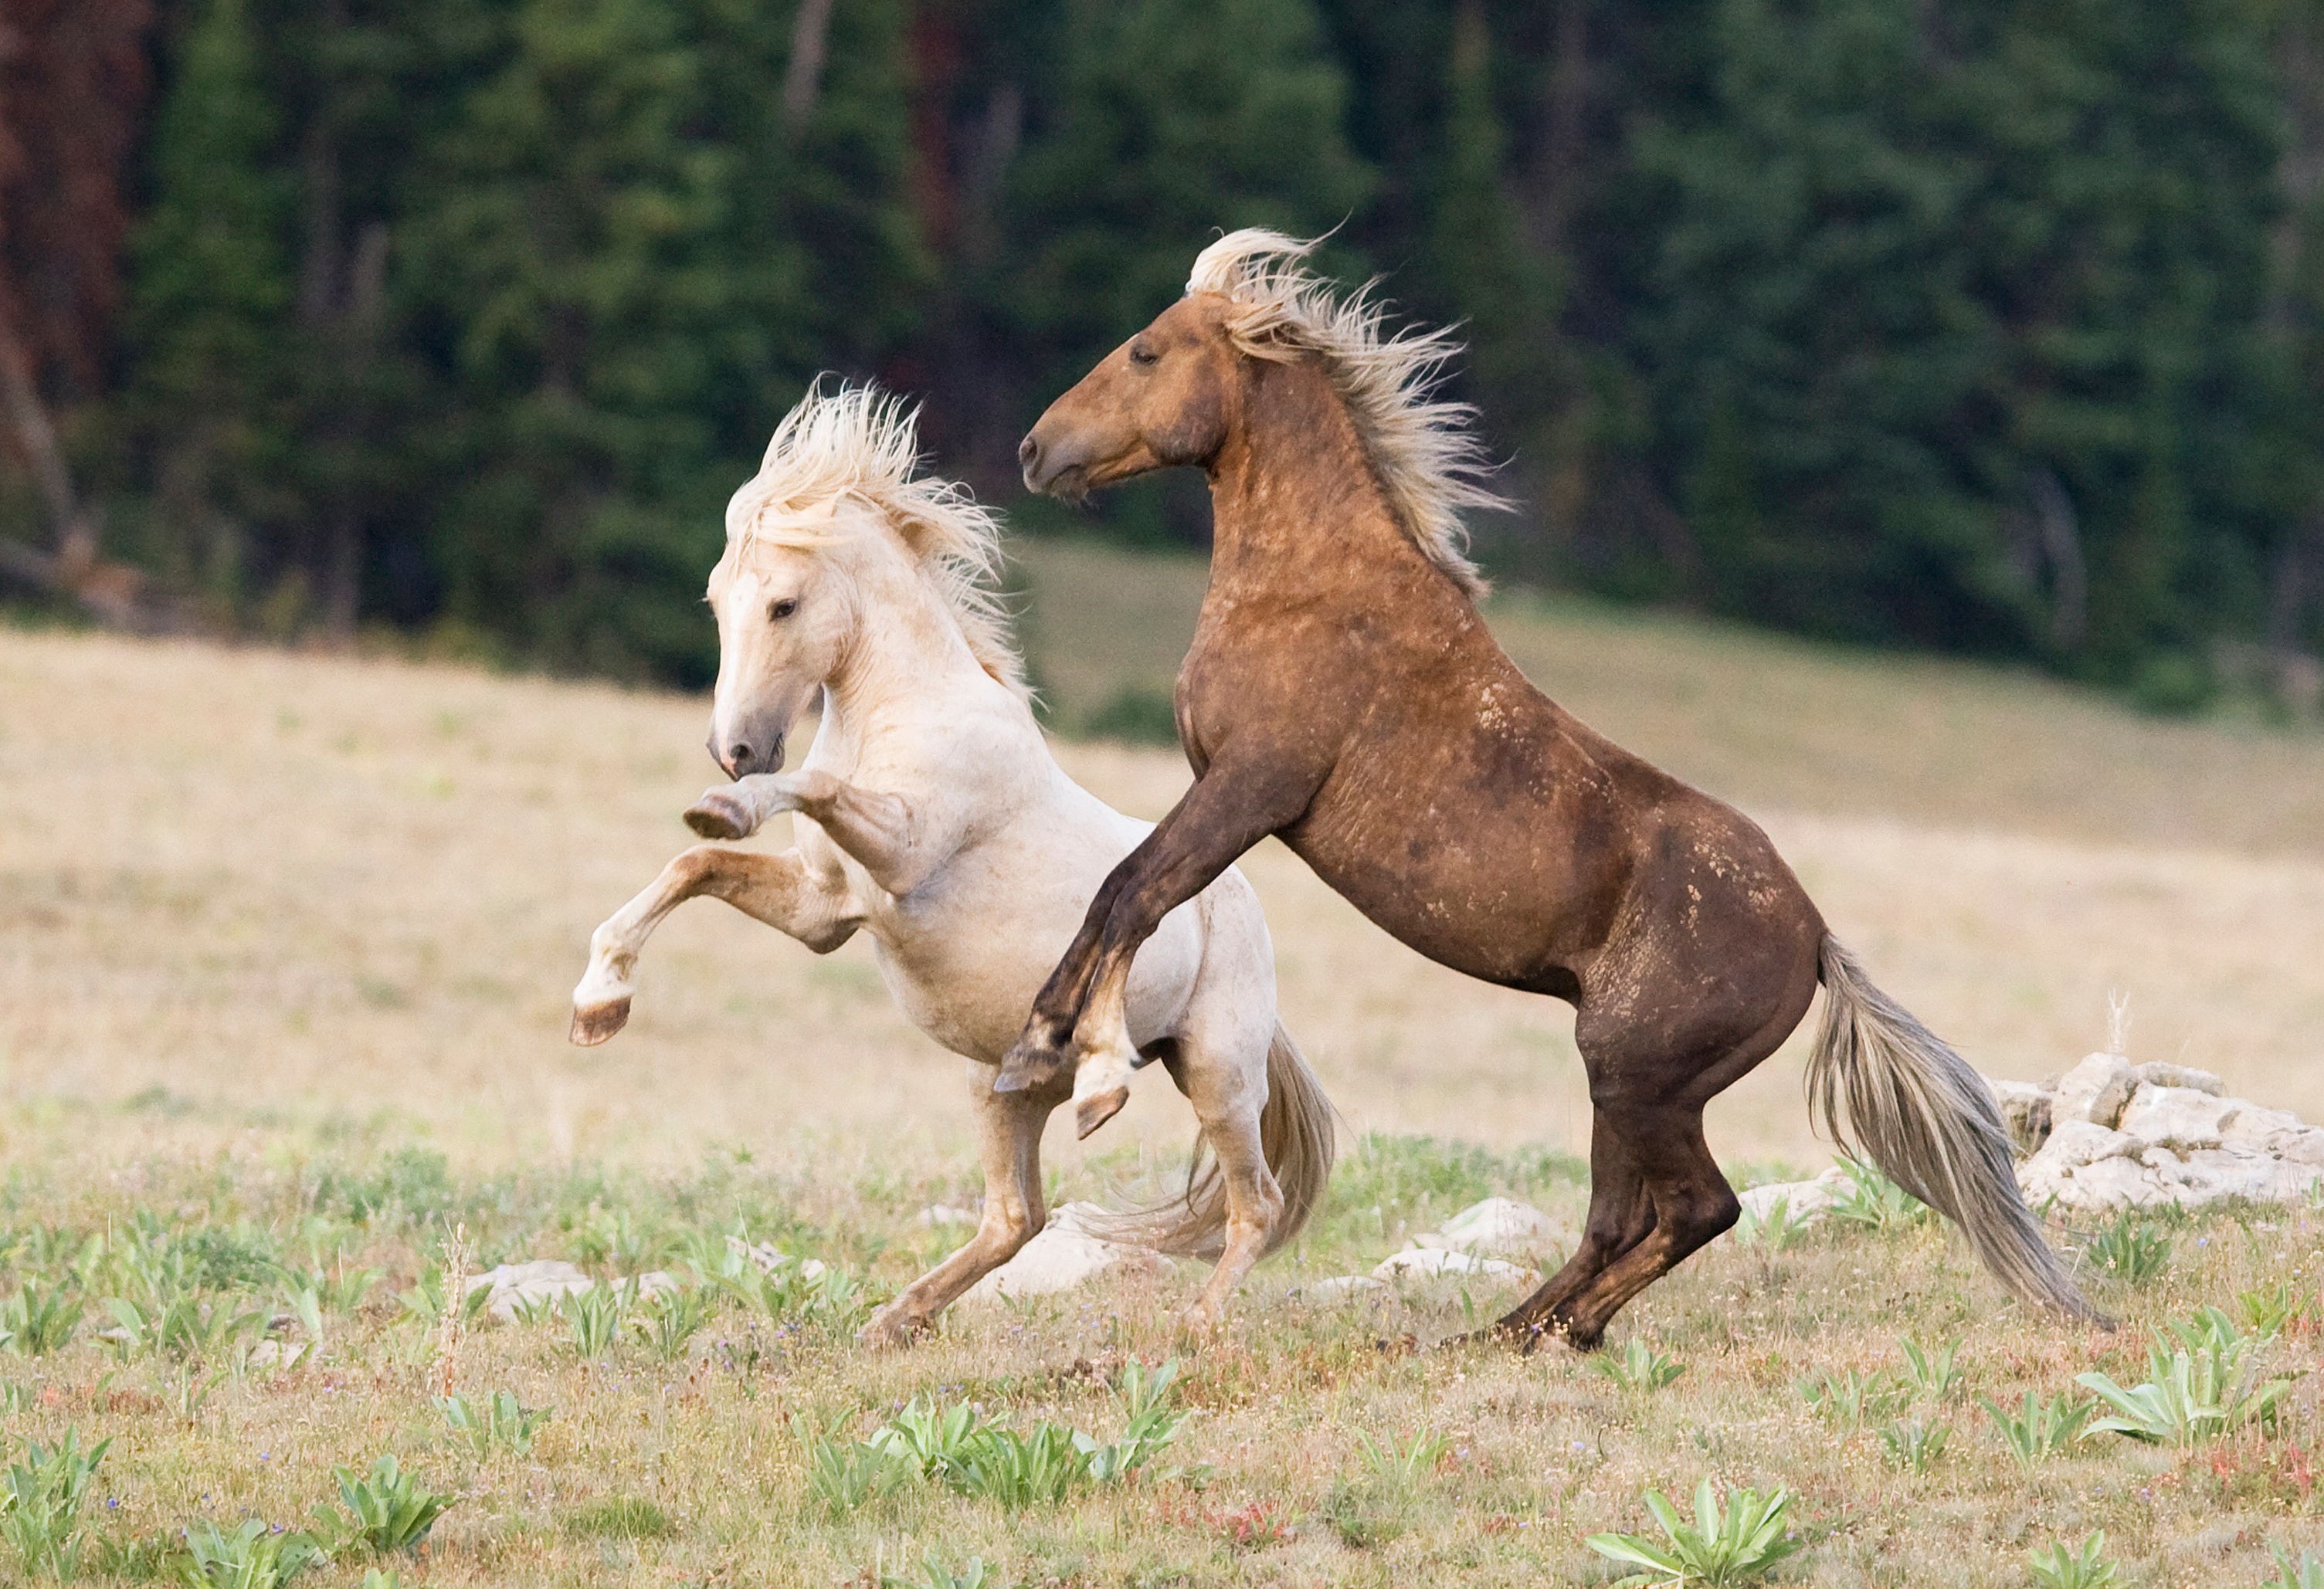 Скачать обои бесплатно Животные, Лошадь картинка на рабочий стол ПК